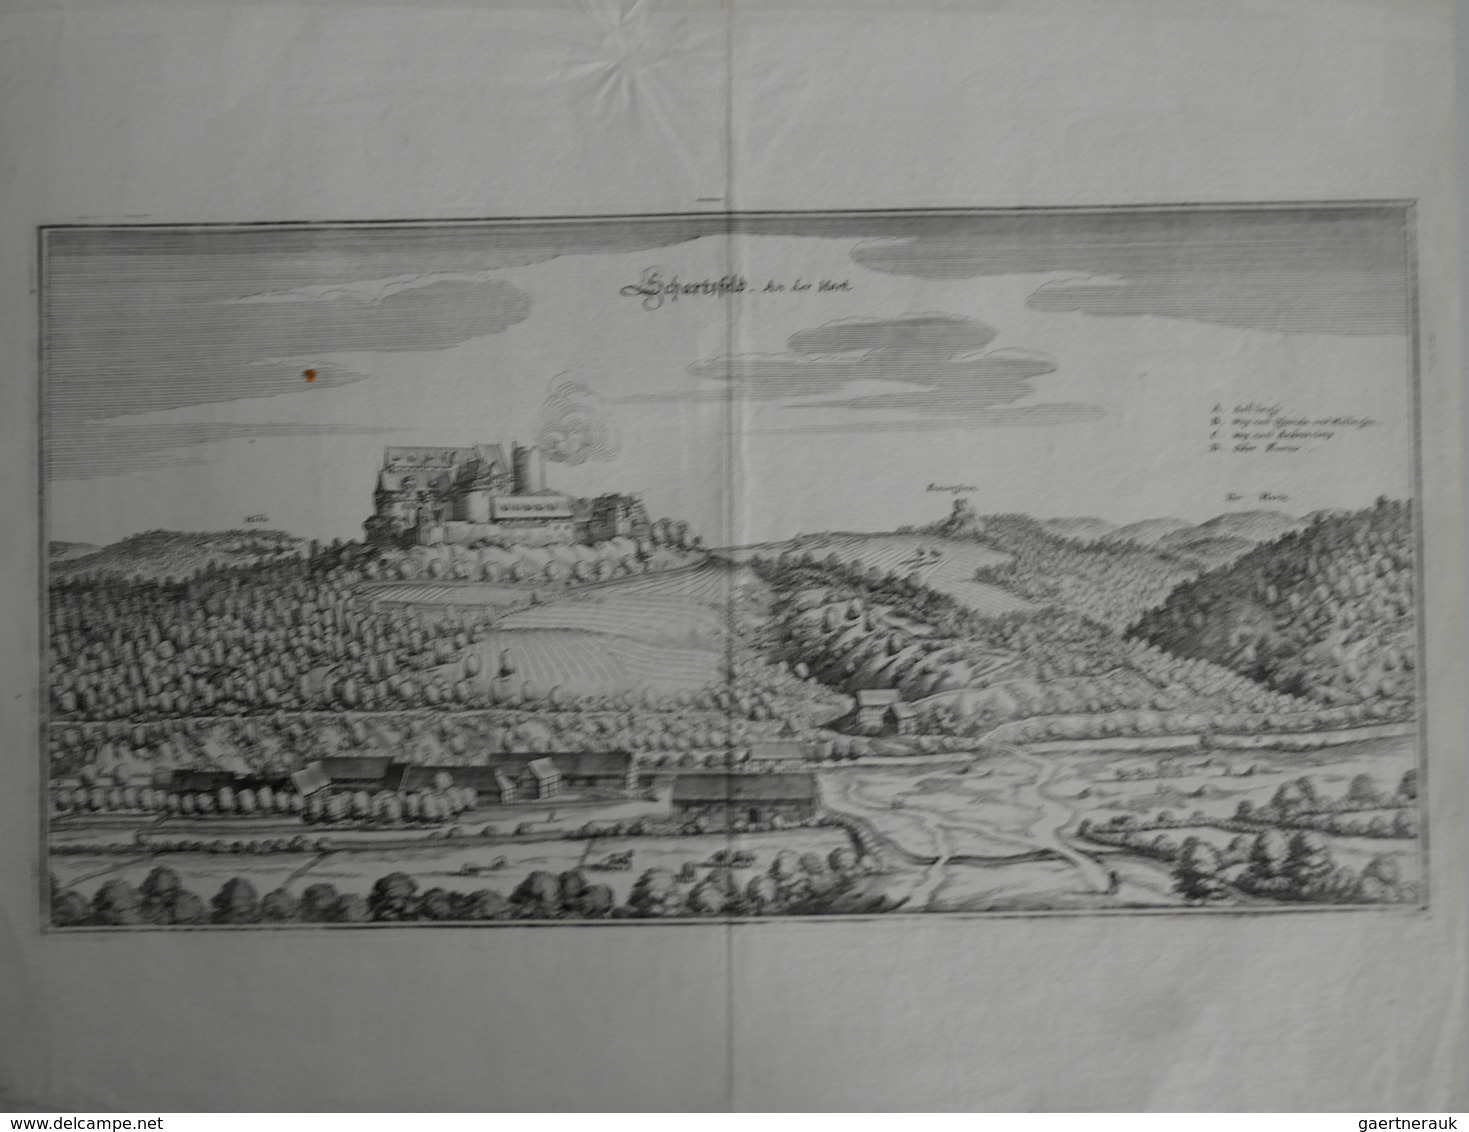 Landkarten Und Stiche: 1650 (ca): Original Antique View Of Mathias Merian Of The German Town Of Scha - Geographie